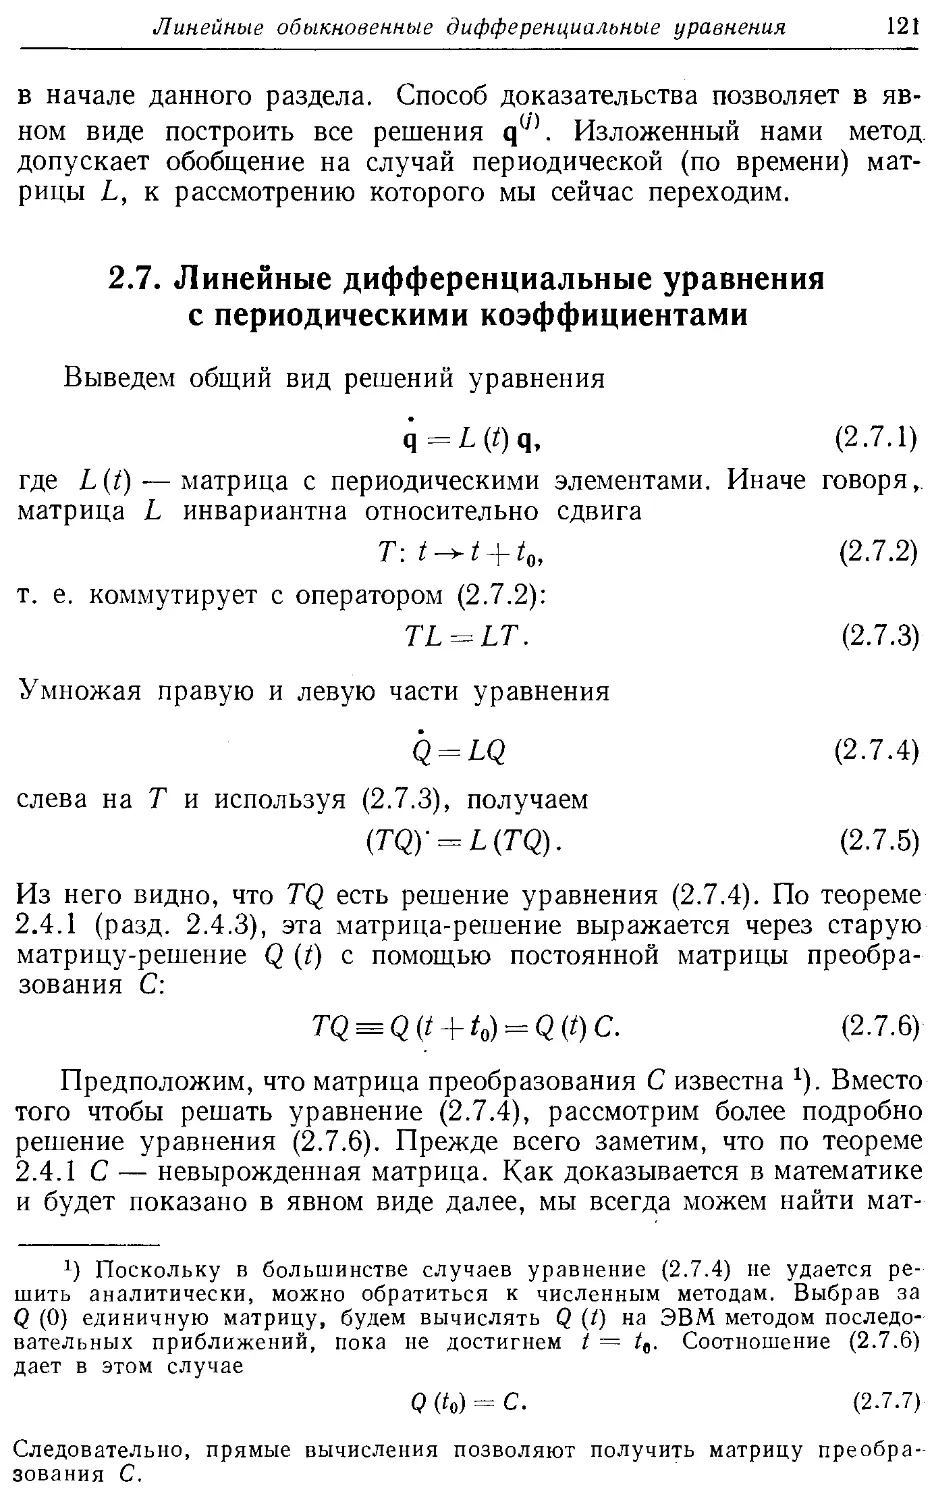 2.7. Линейные дифференциальные уравнения с периодическими коэффициентами